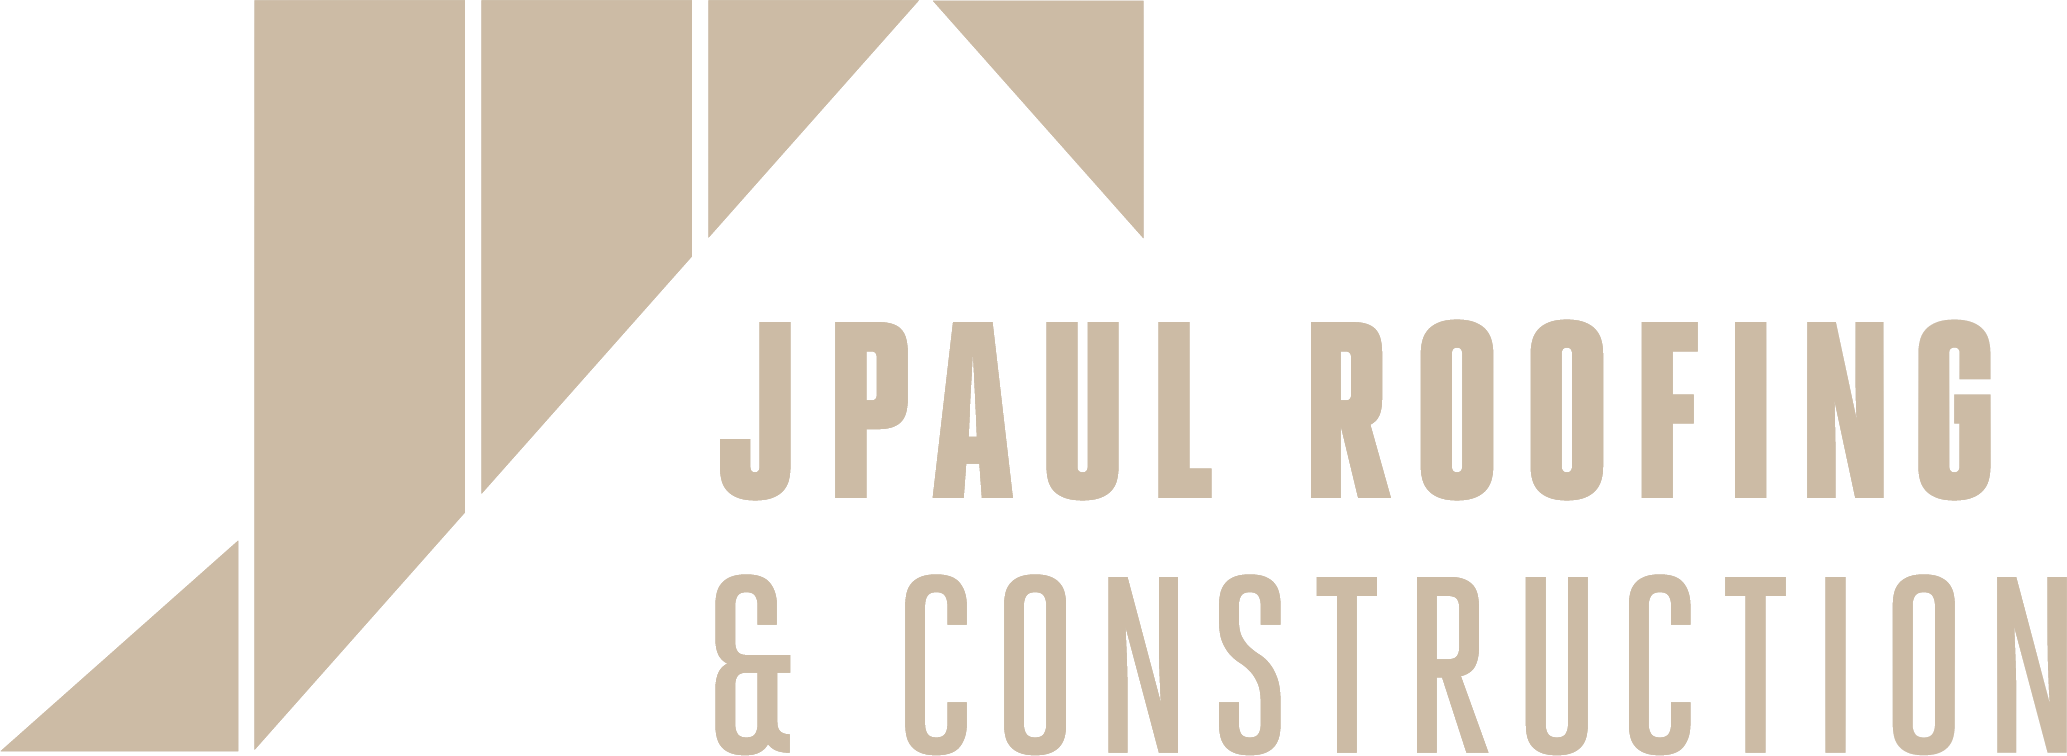 jpaul-logo